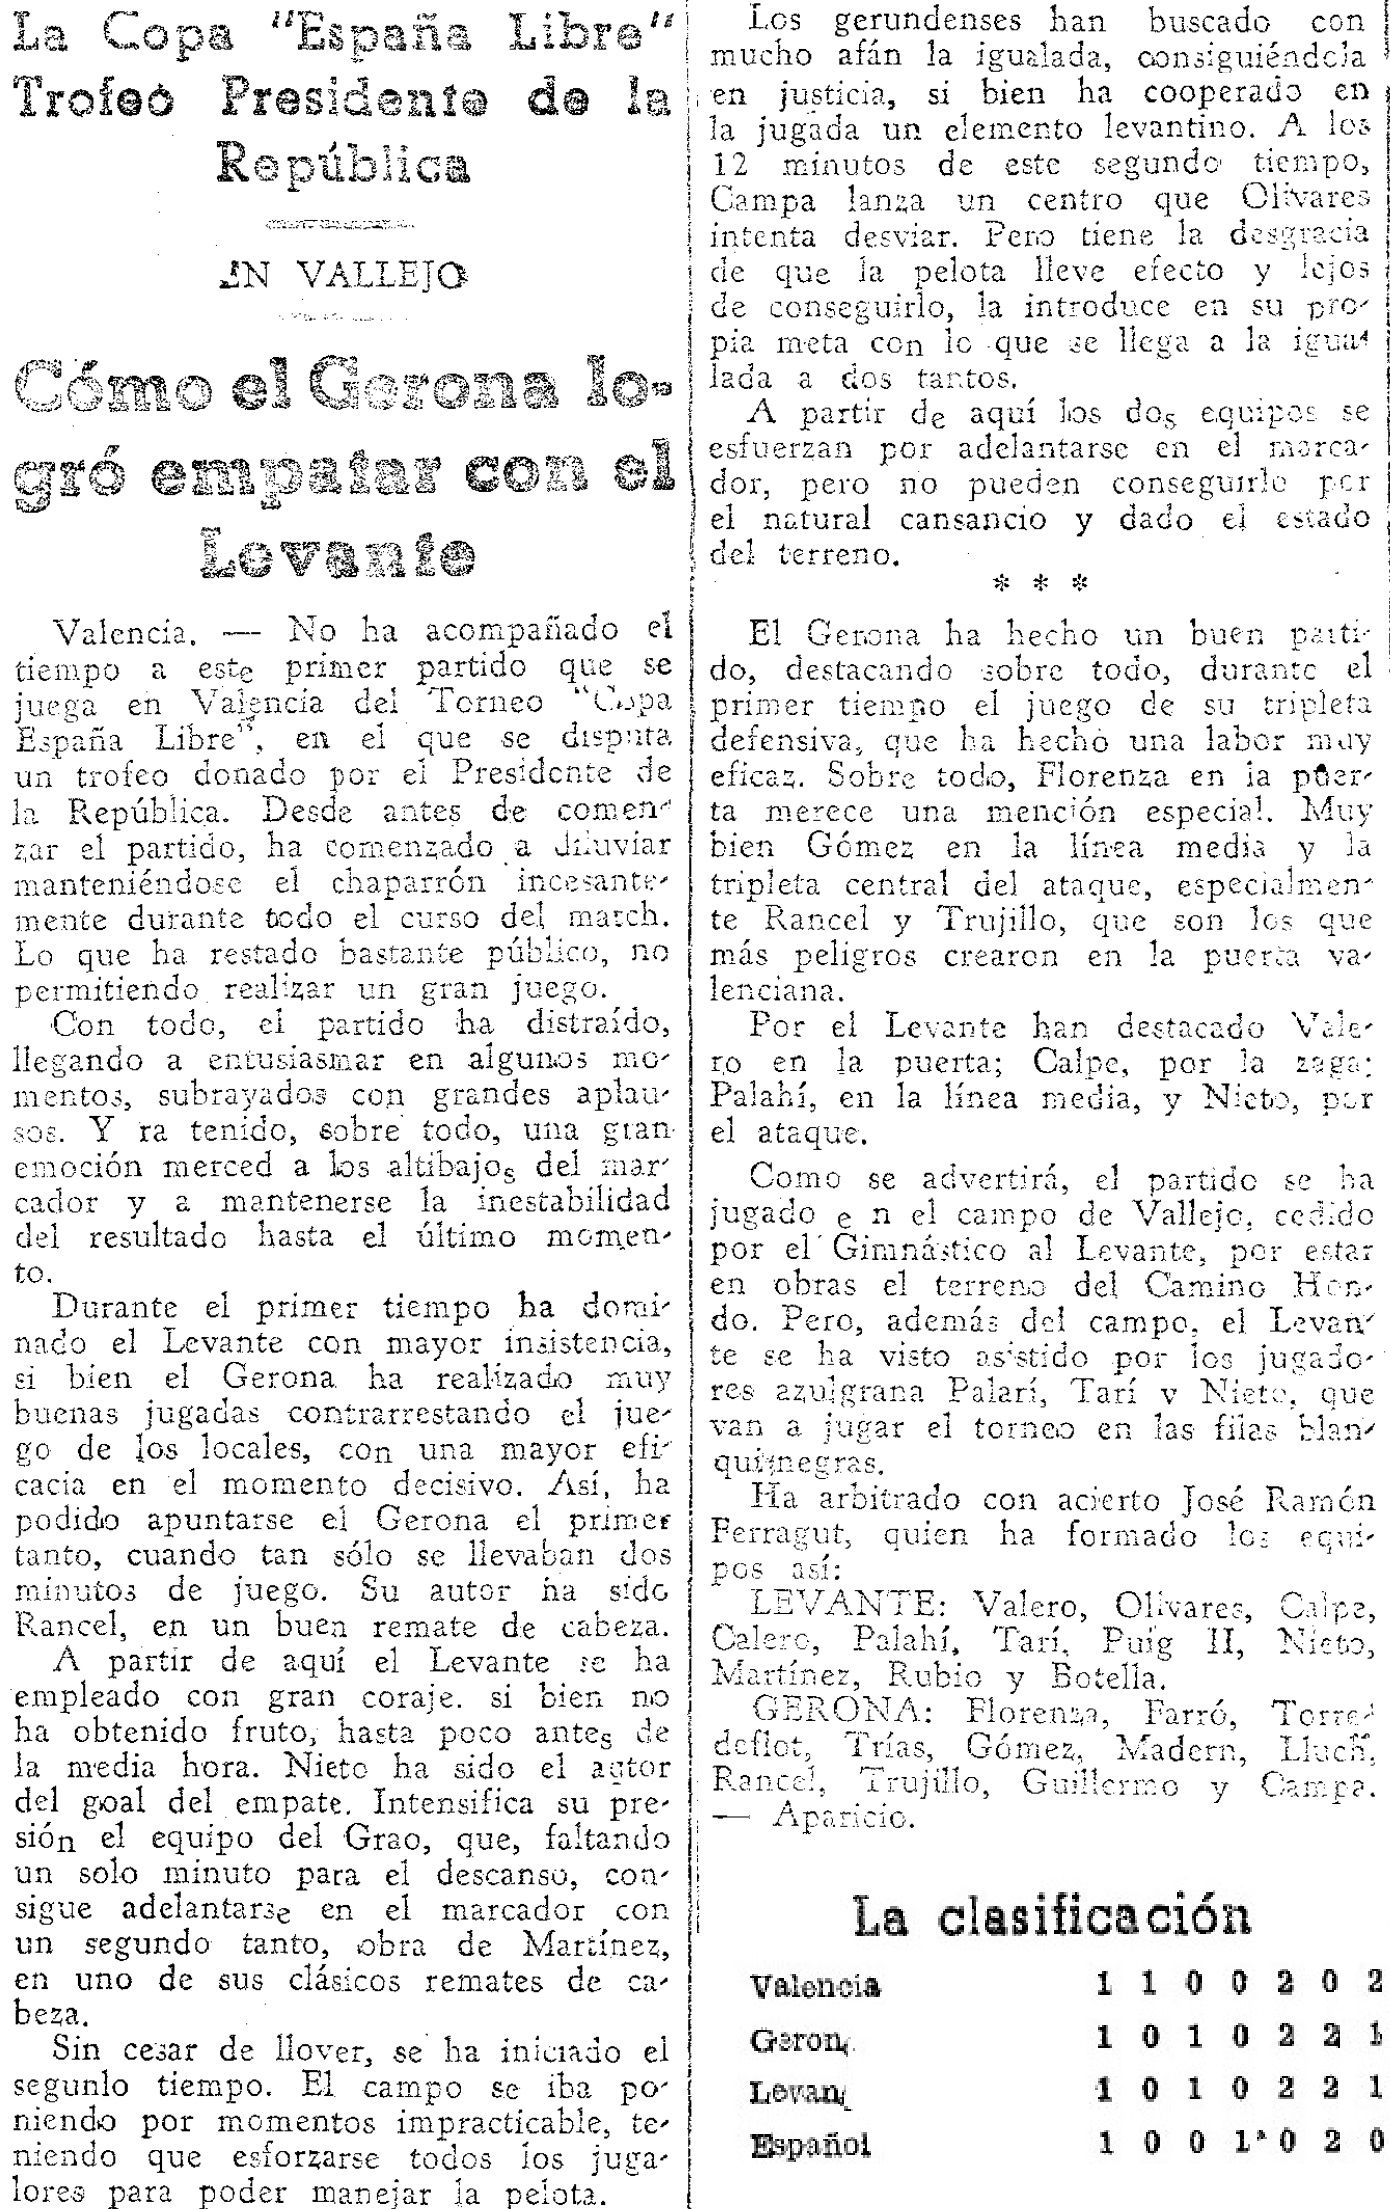 1937.06.06 (6 июня 1937), Леванте - Жирона, 2-2.jpg